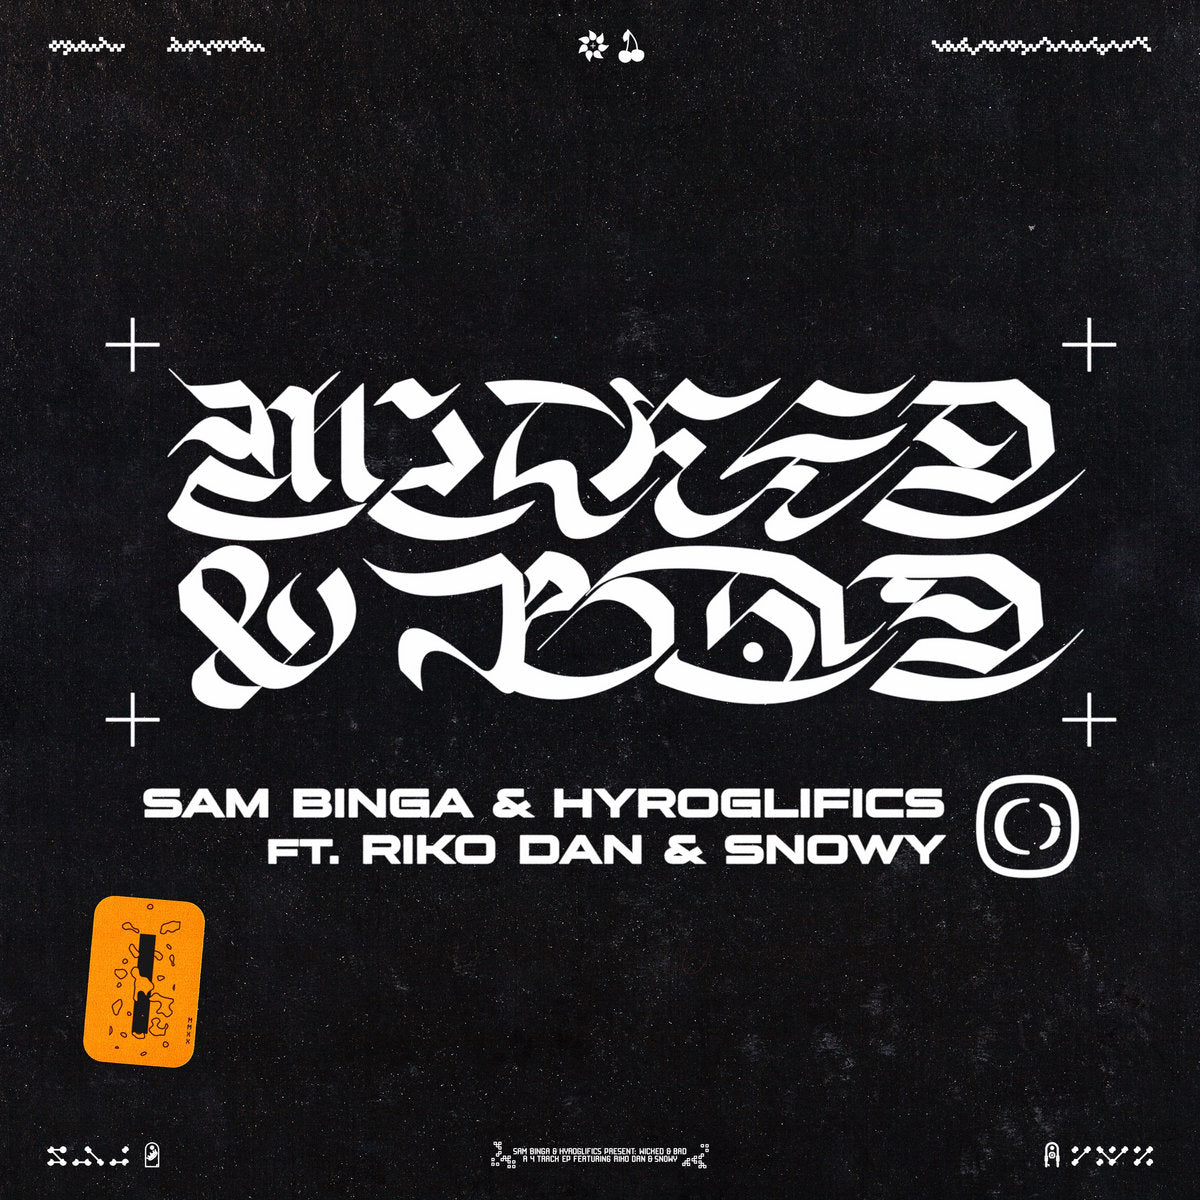 Sam Binga & Hyroglifics 'Wicked & Bad EP' 12" (Yellow Repress) [Import]